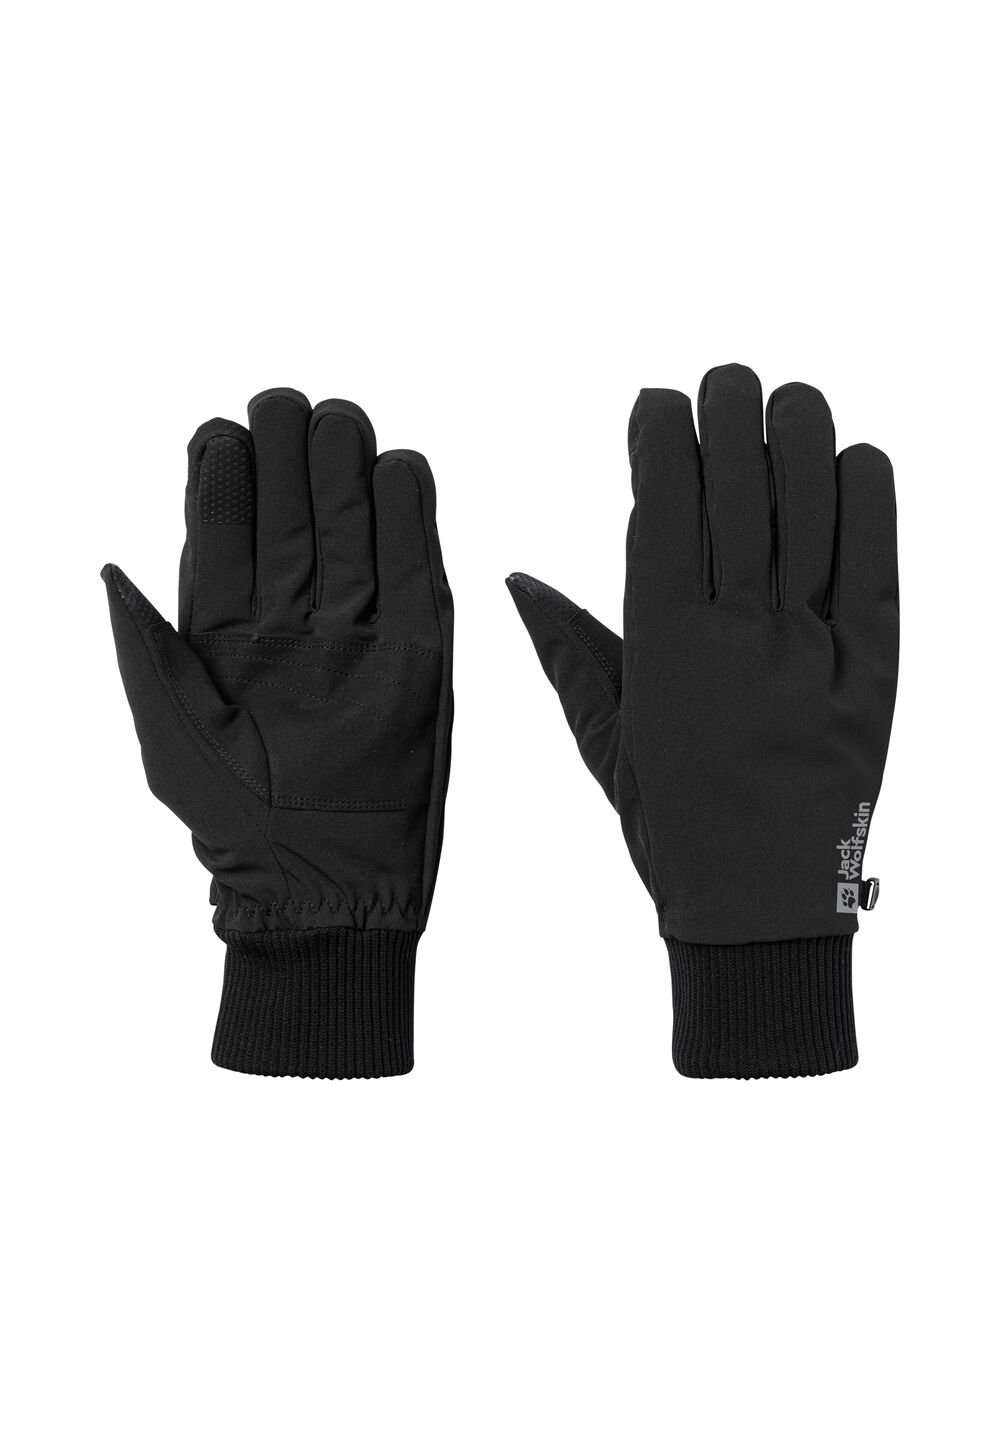 Jack Wolfskin Supersonic Extended Version Glove Winddichte handschoenen XL zwart black